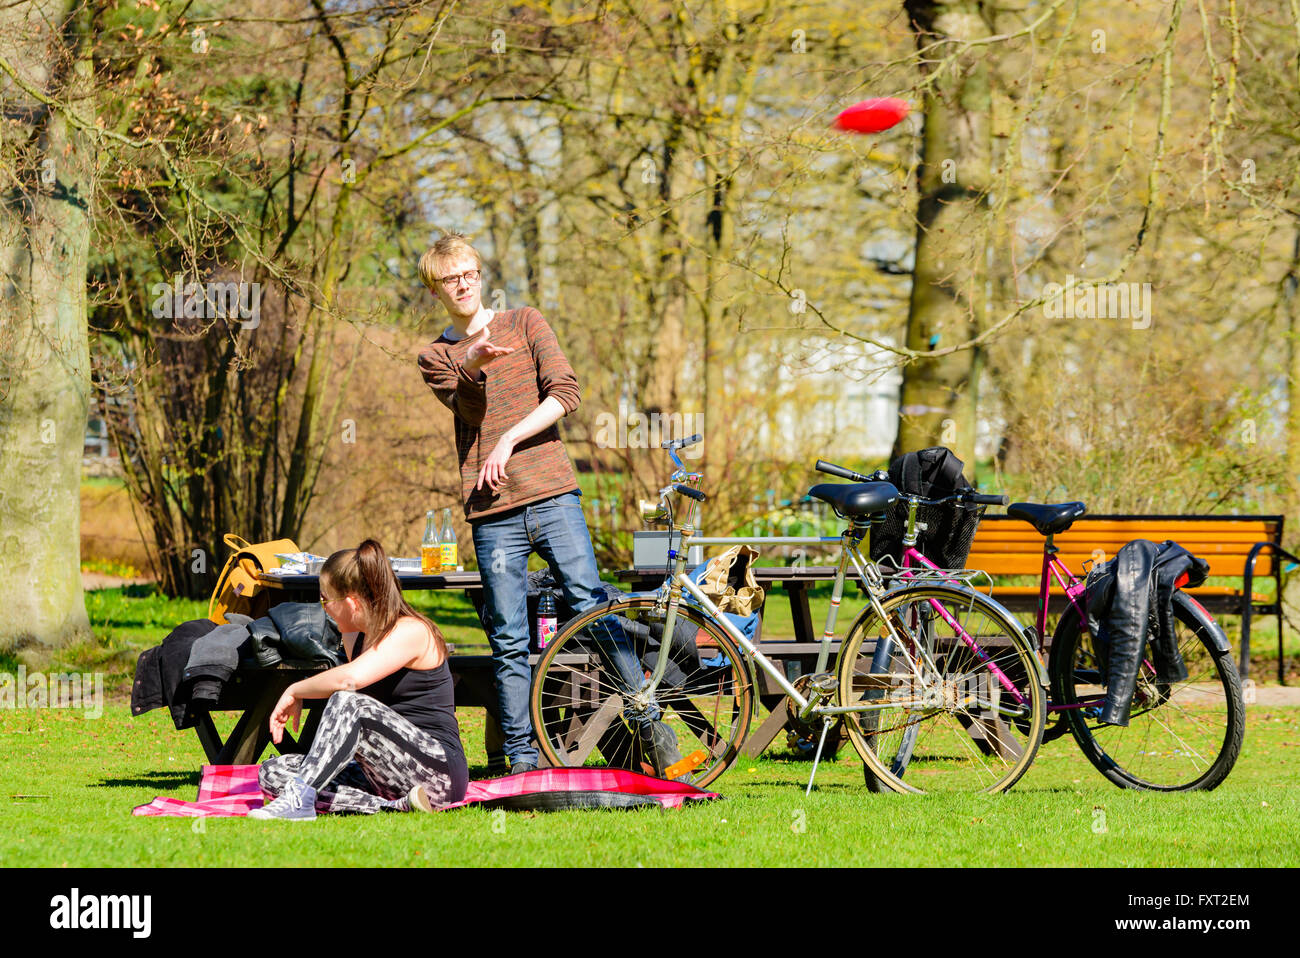 Lund, Schweden - 11. April 2016: Leben in der Stadt jeden Tag. Jungen Erwachsenen Mannes in einem Park ist eine fliegende Scheibe werfen, während eine Frau her in sitzt Stockfoto